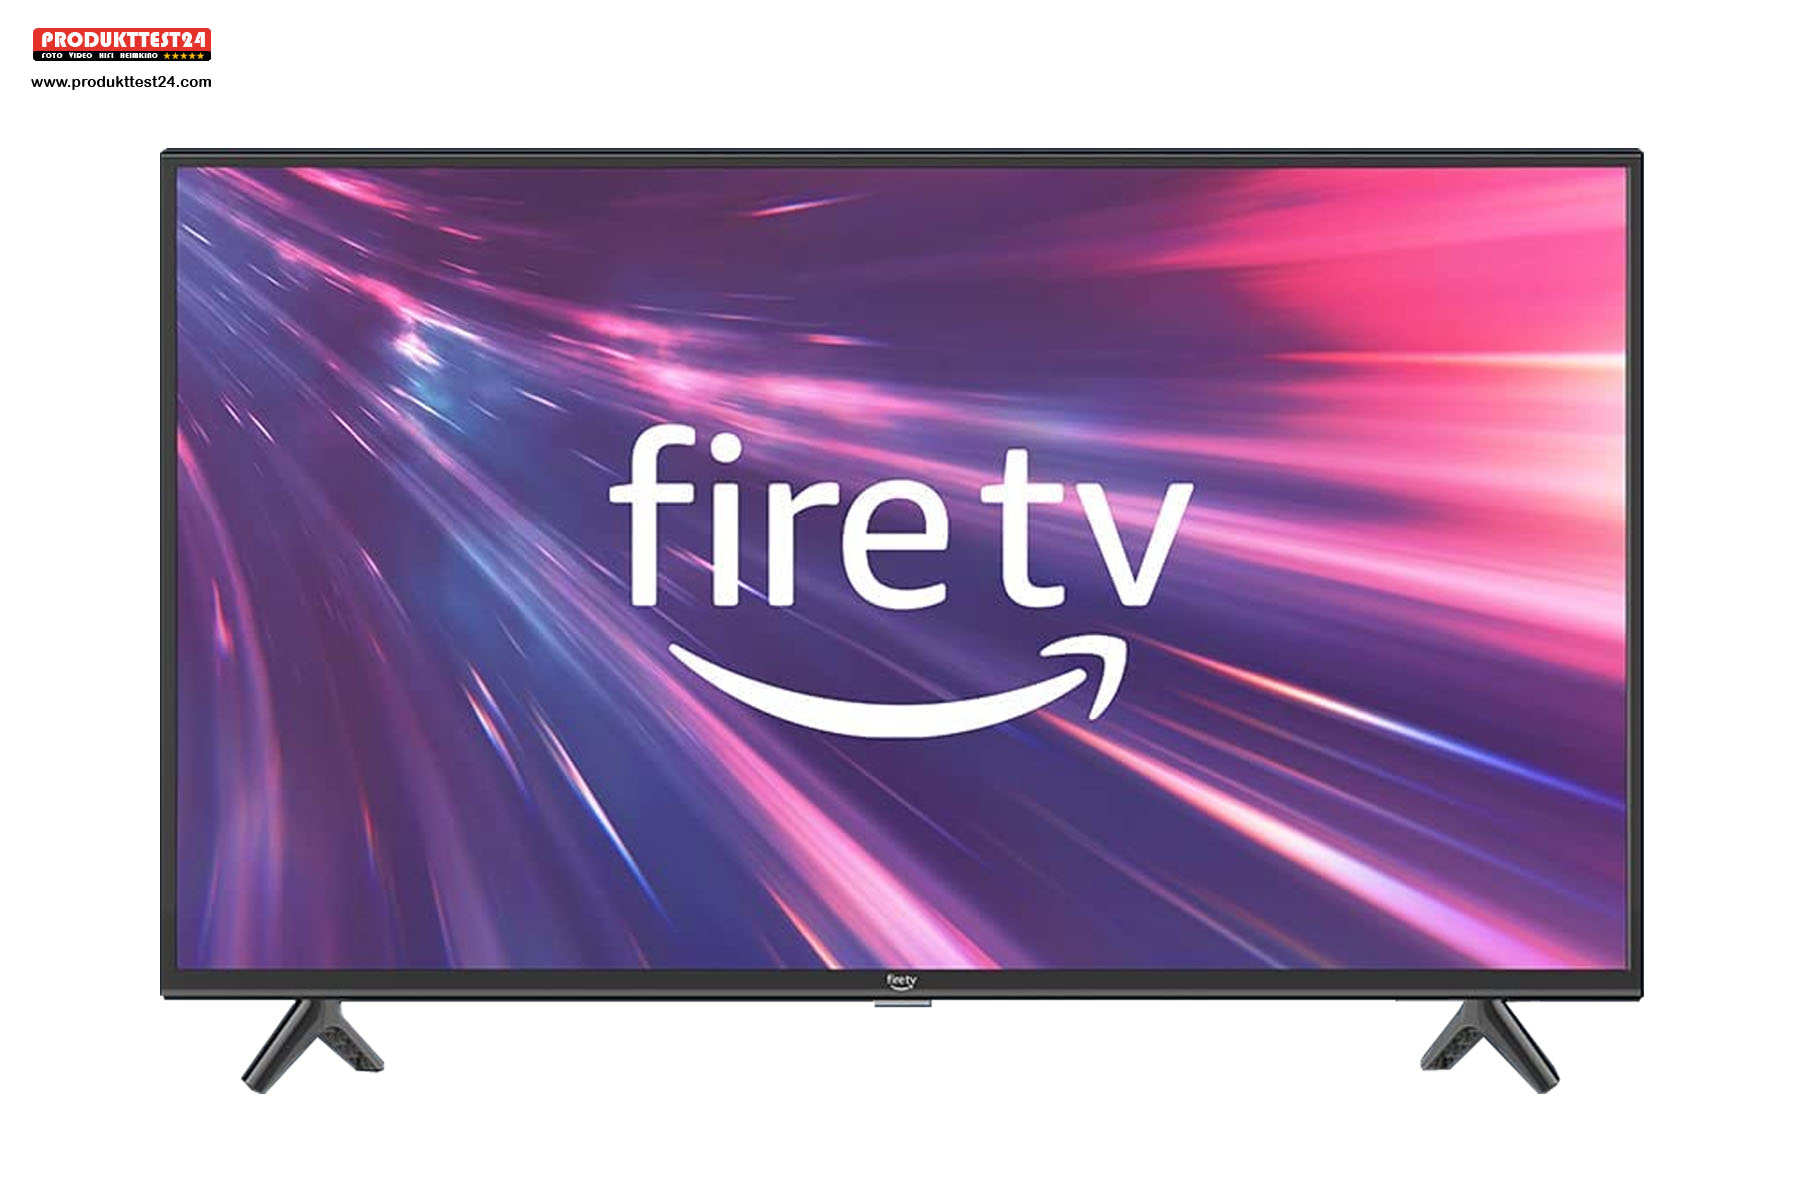 Der Amazon Fire TV 2 Fernseher mit 40 Zoll Bilddiagonale